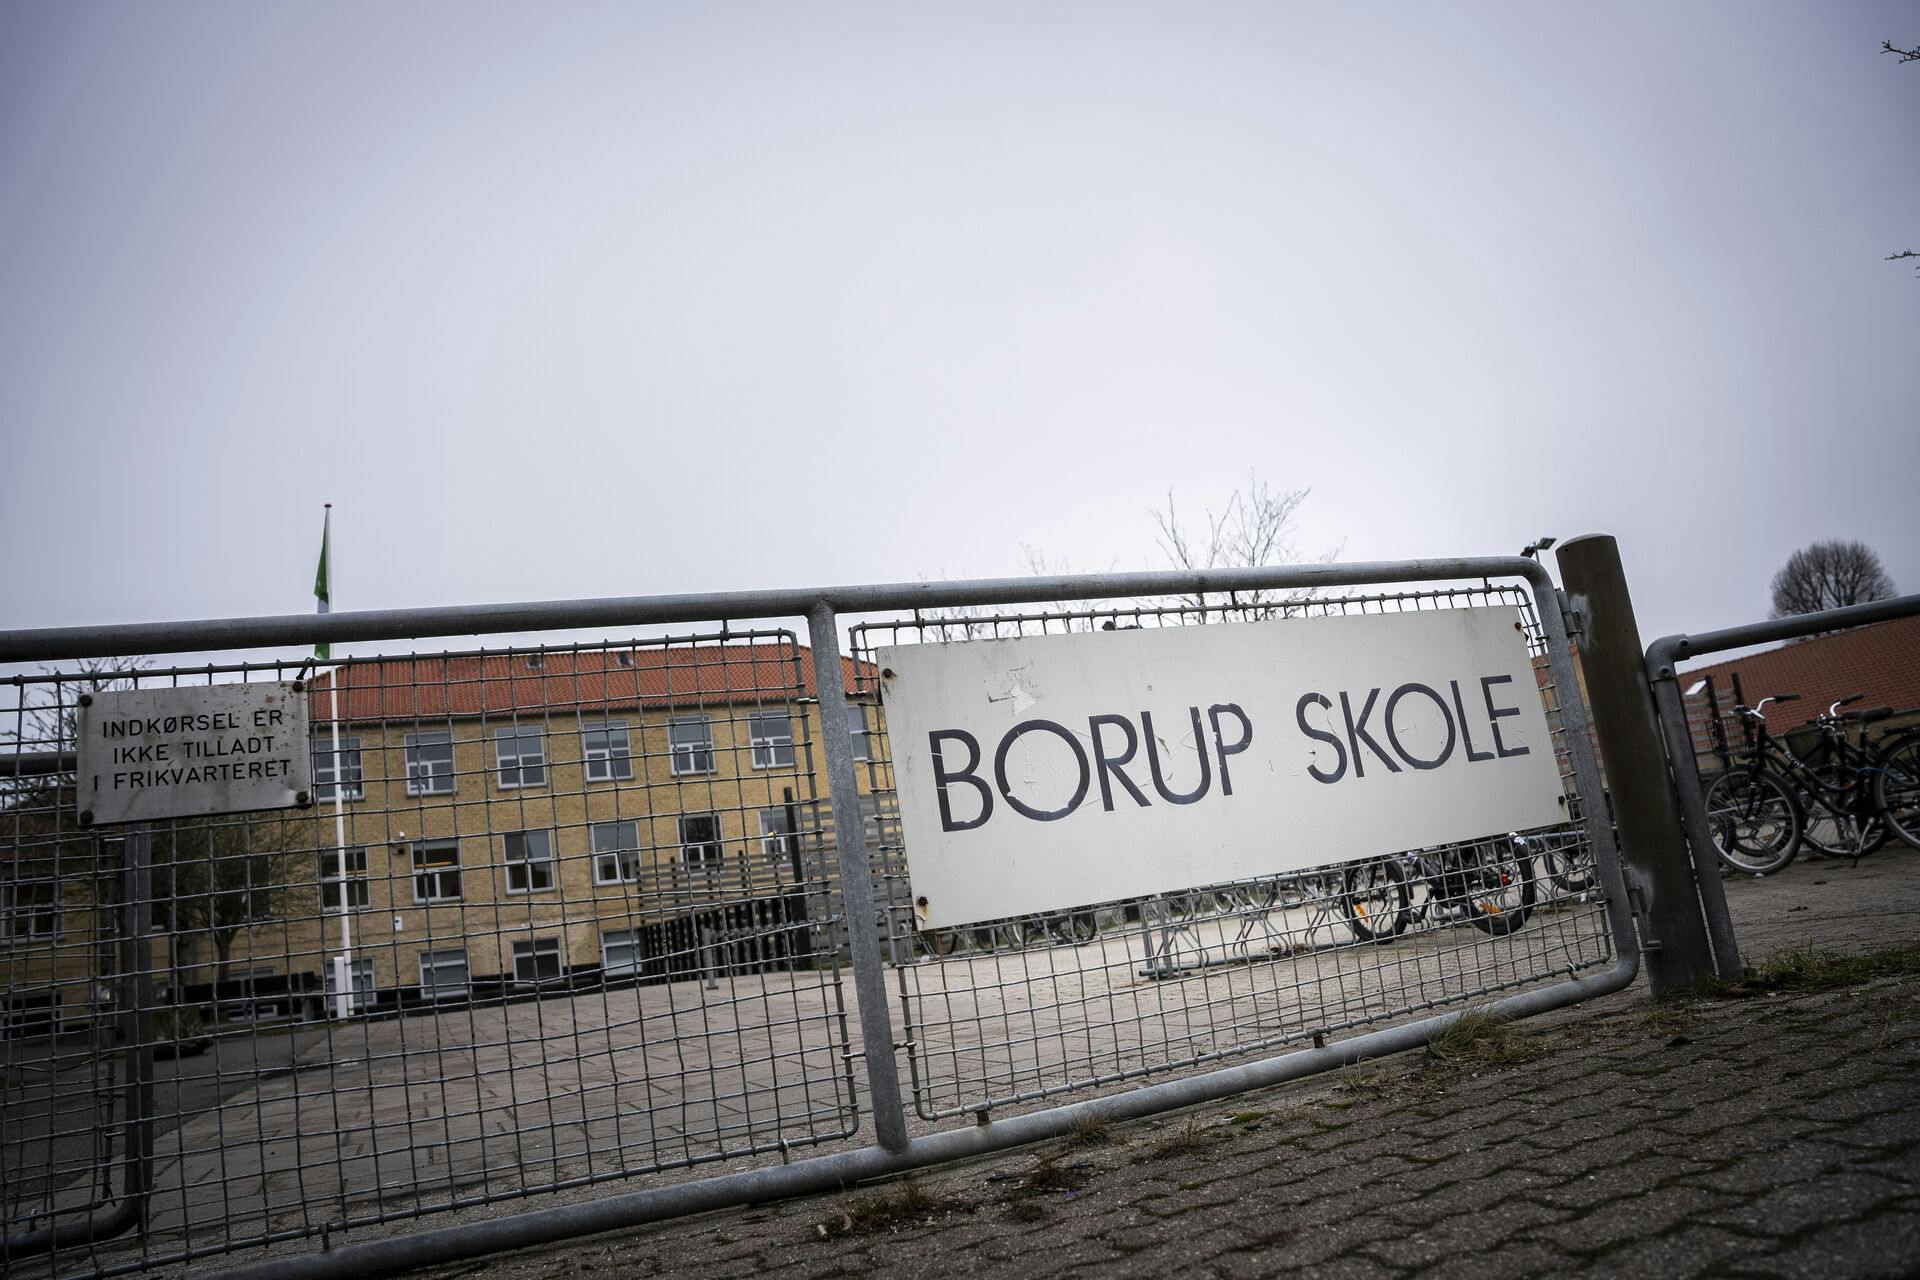 Lærere, pædagoger og administrationen på Borup Skole retter en særdeles kritisk henvendelse til rådhuset. Det sker på baggrund af sagen om krænkelser på Borup Skole i Køge Kommune.